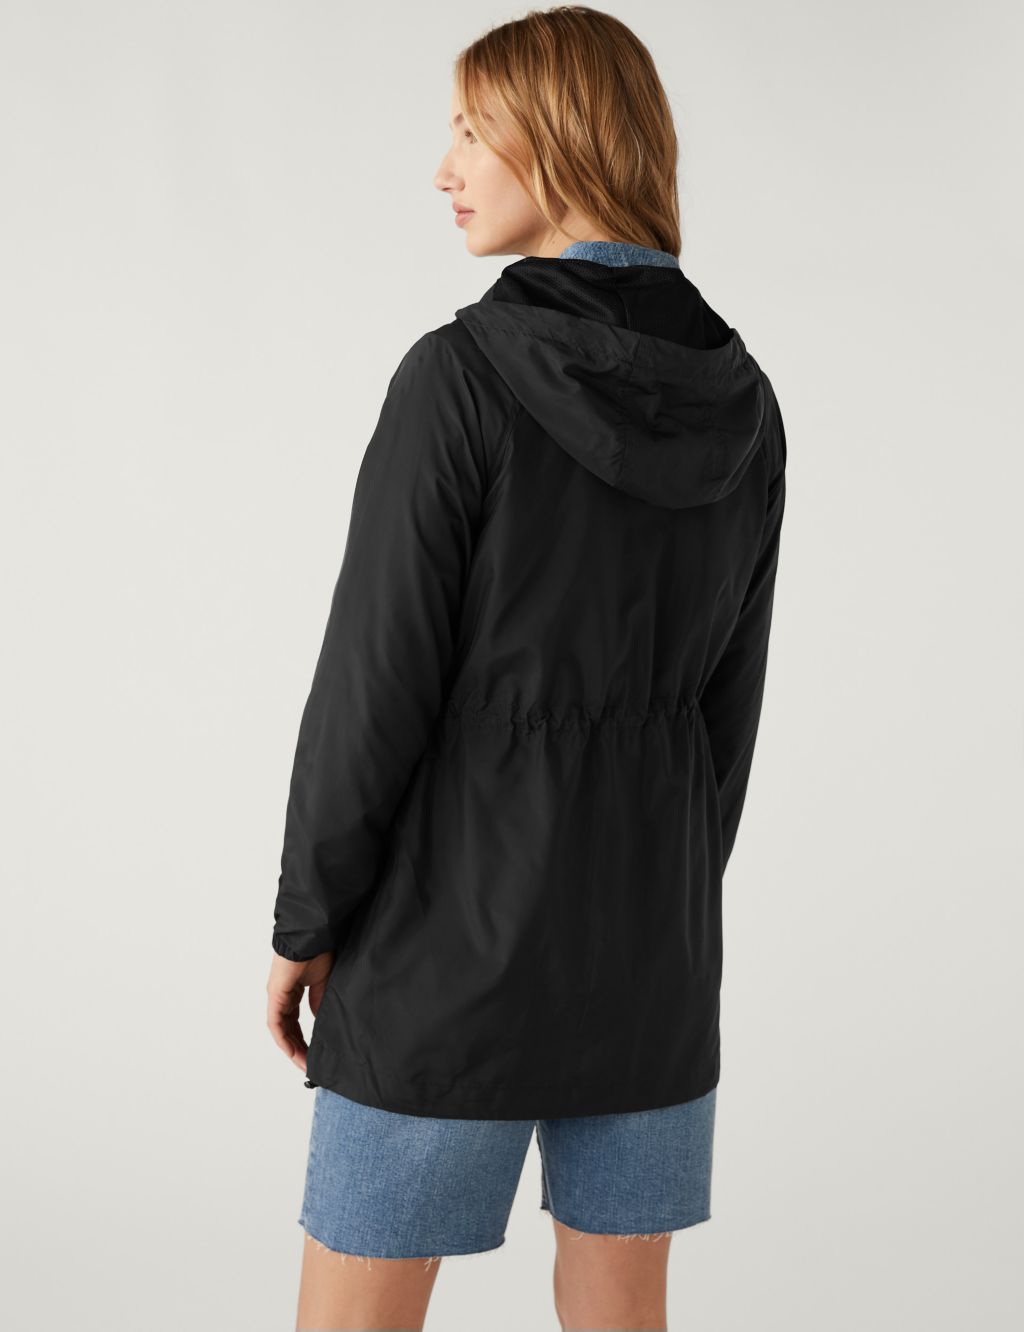 Showerproof Hooded Packaway Raincoat image 5